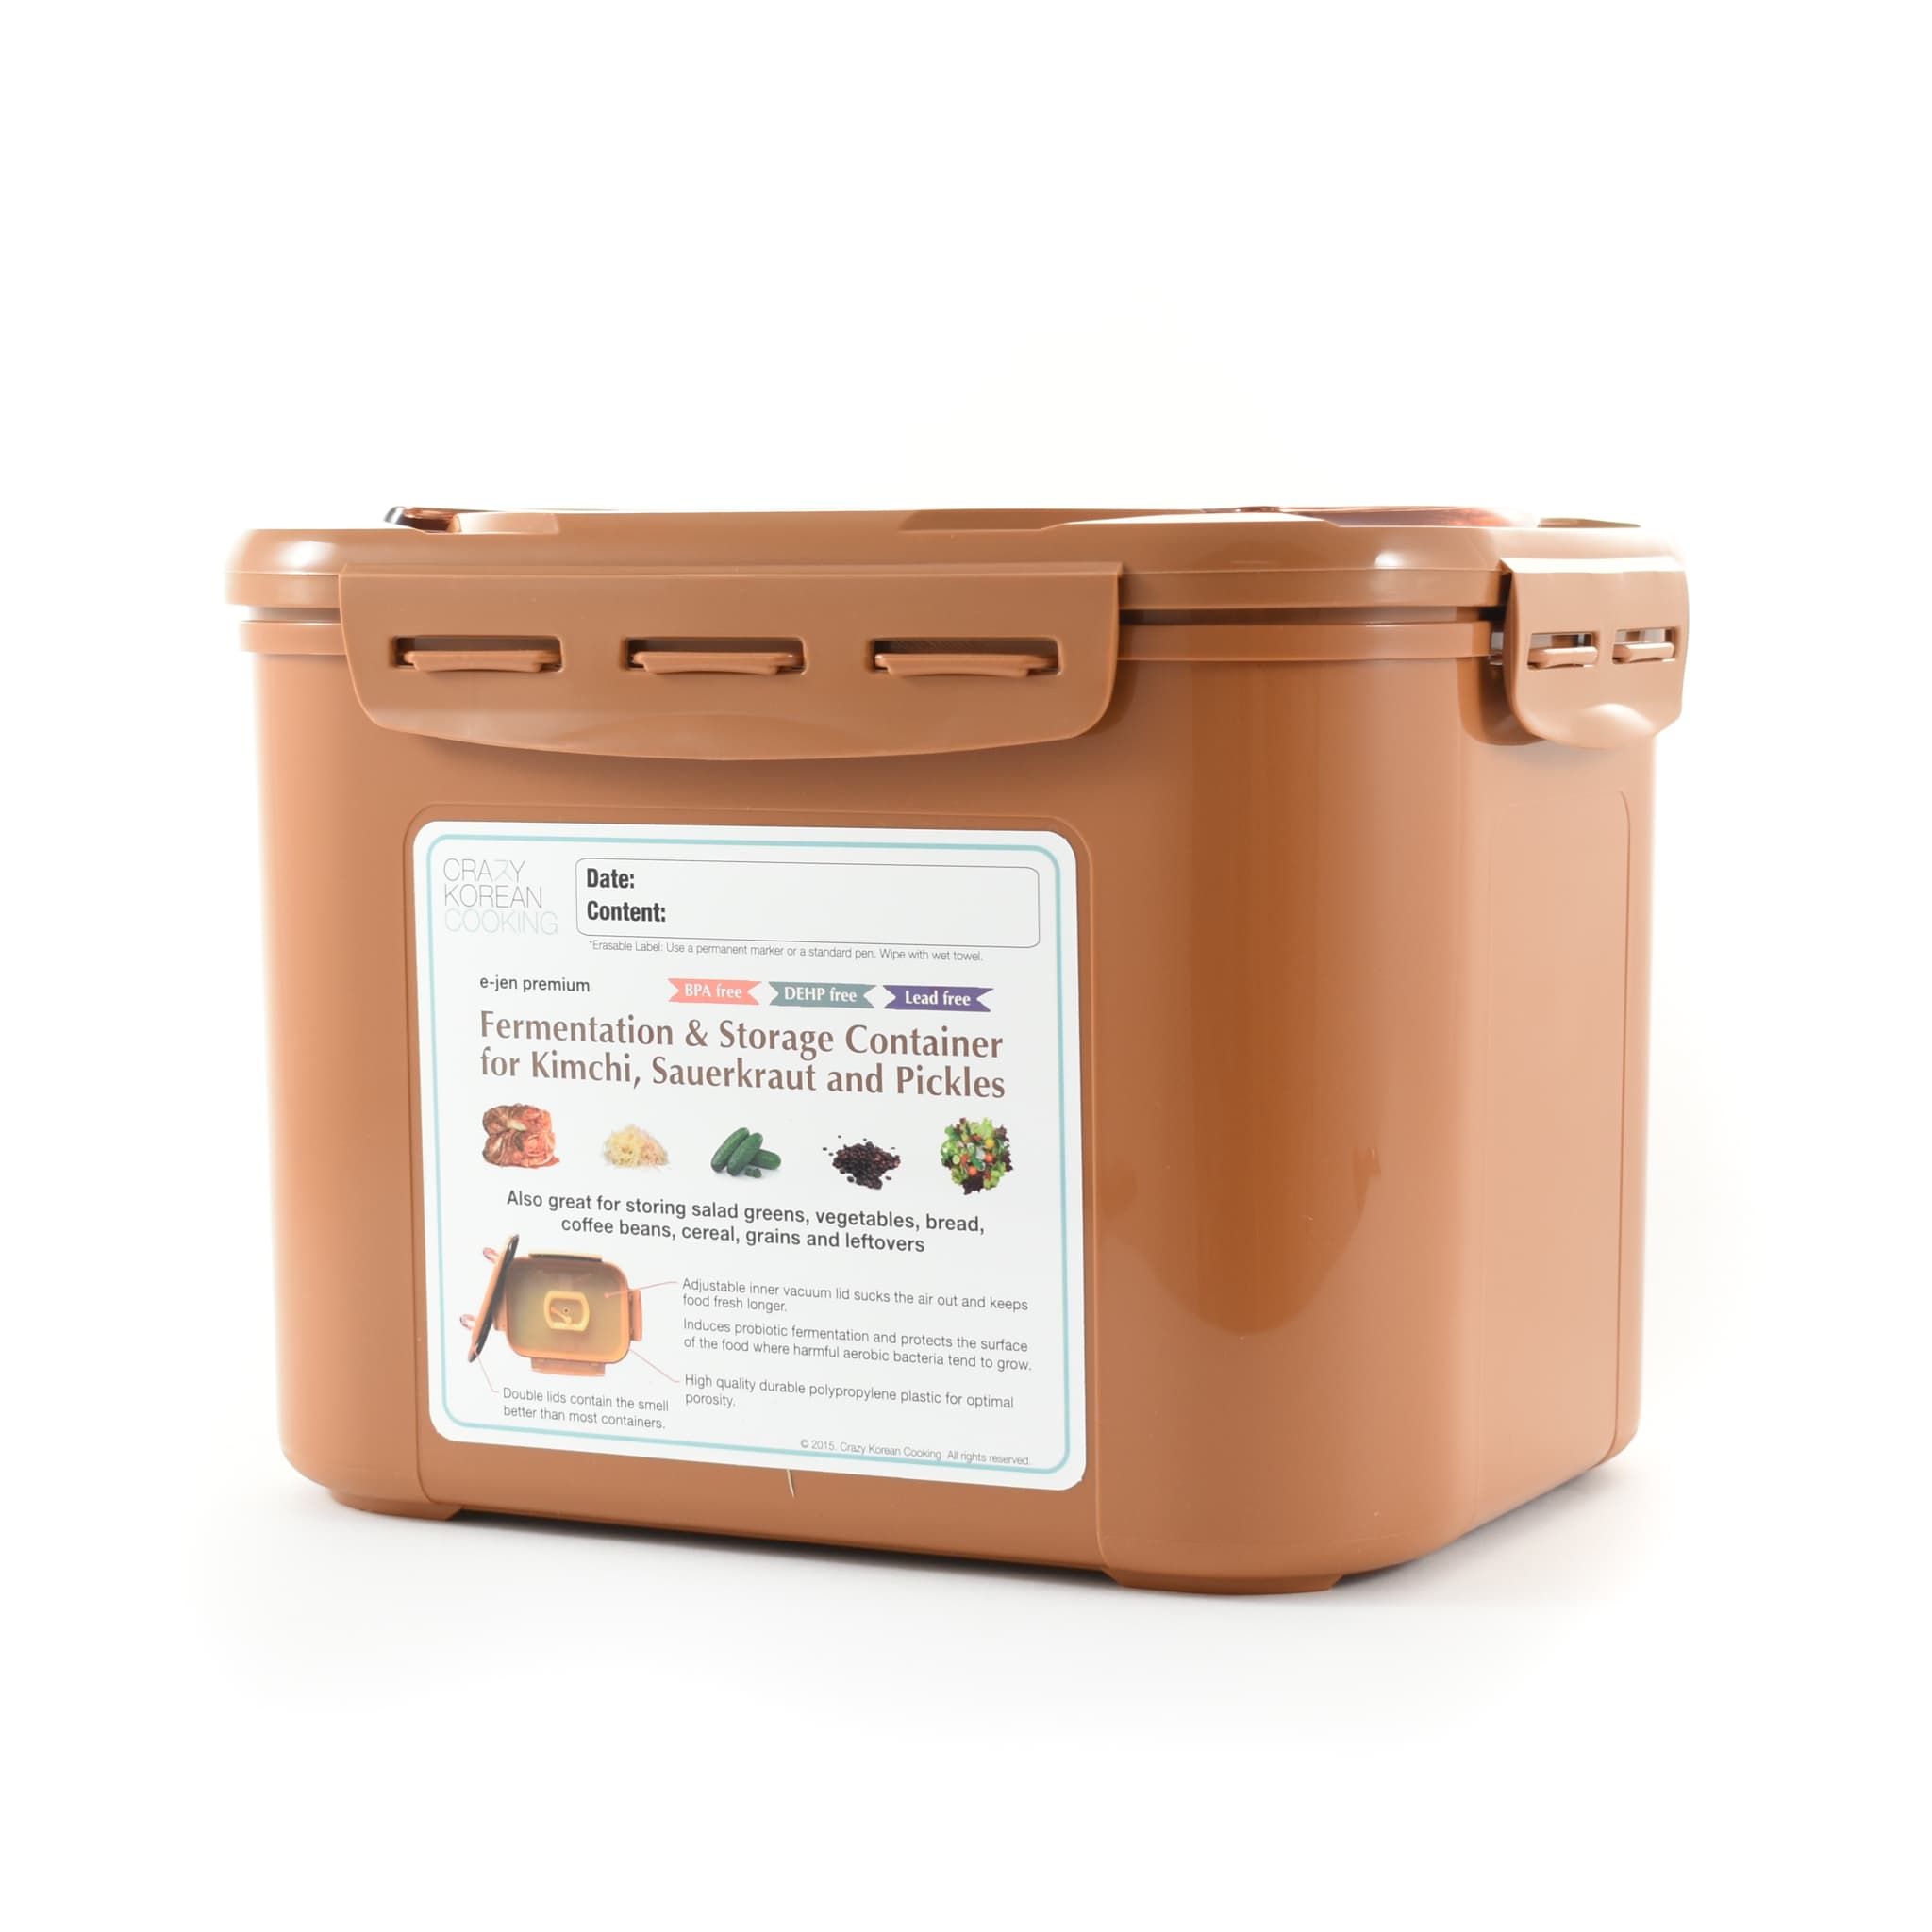 E-Jen Brining & Fermentation Container 8.5 litre